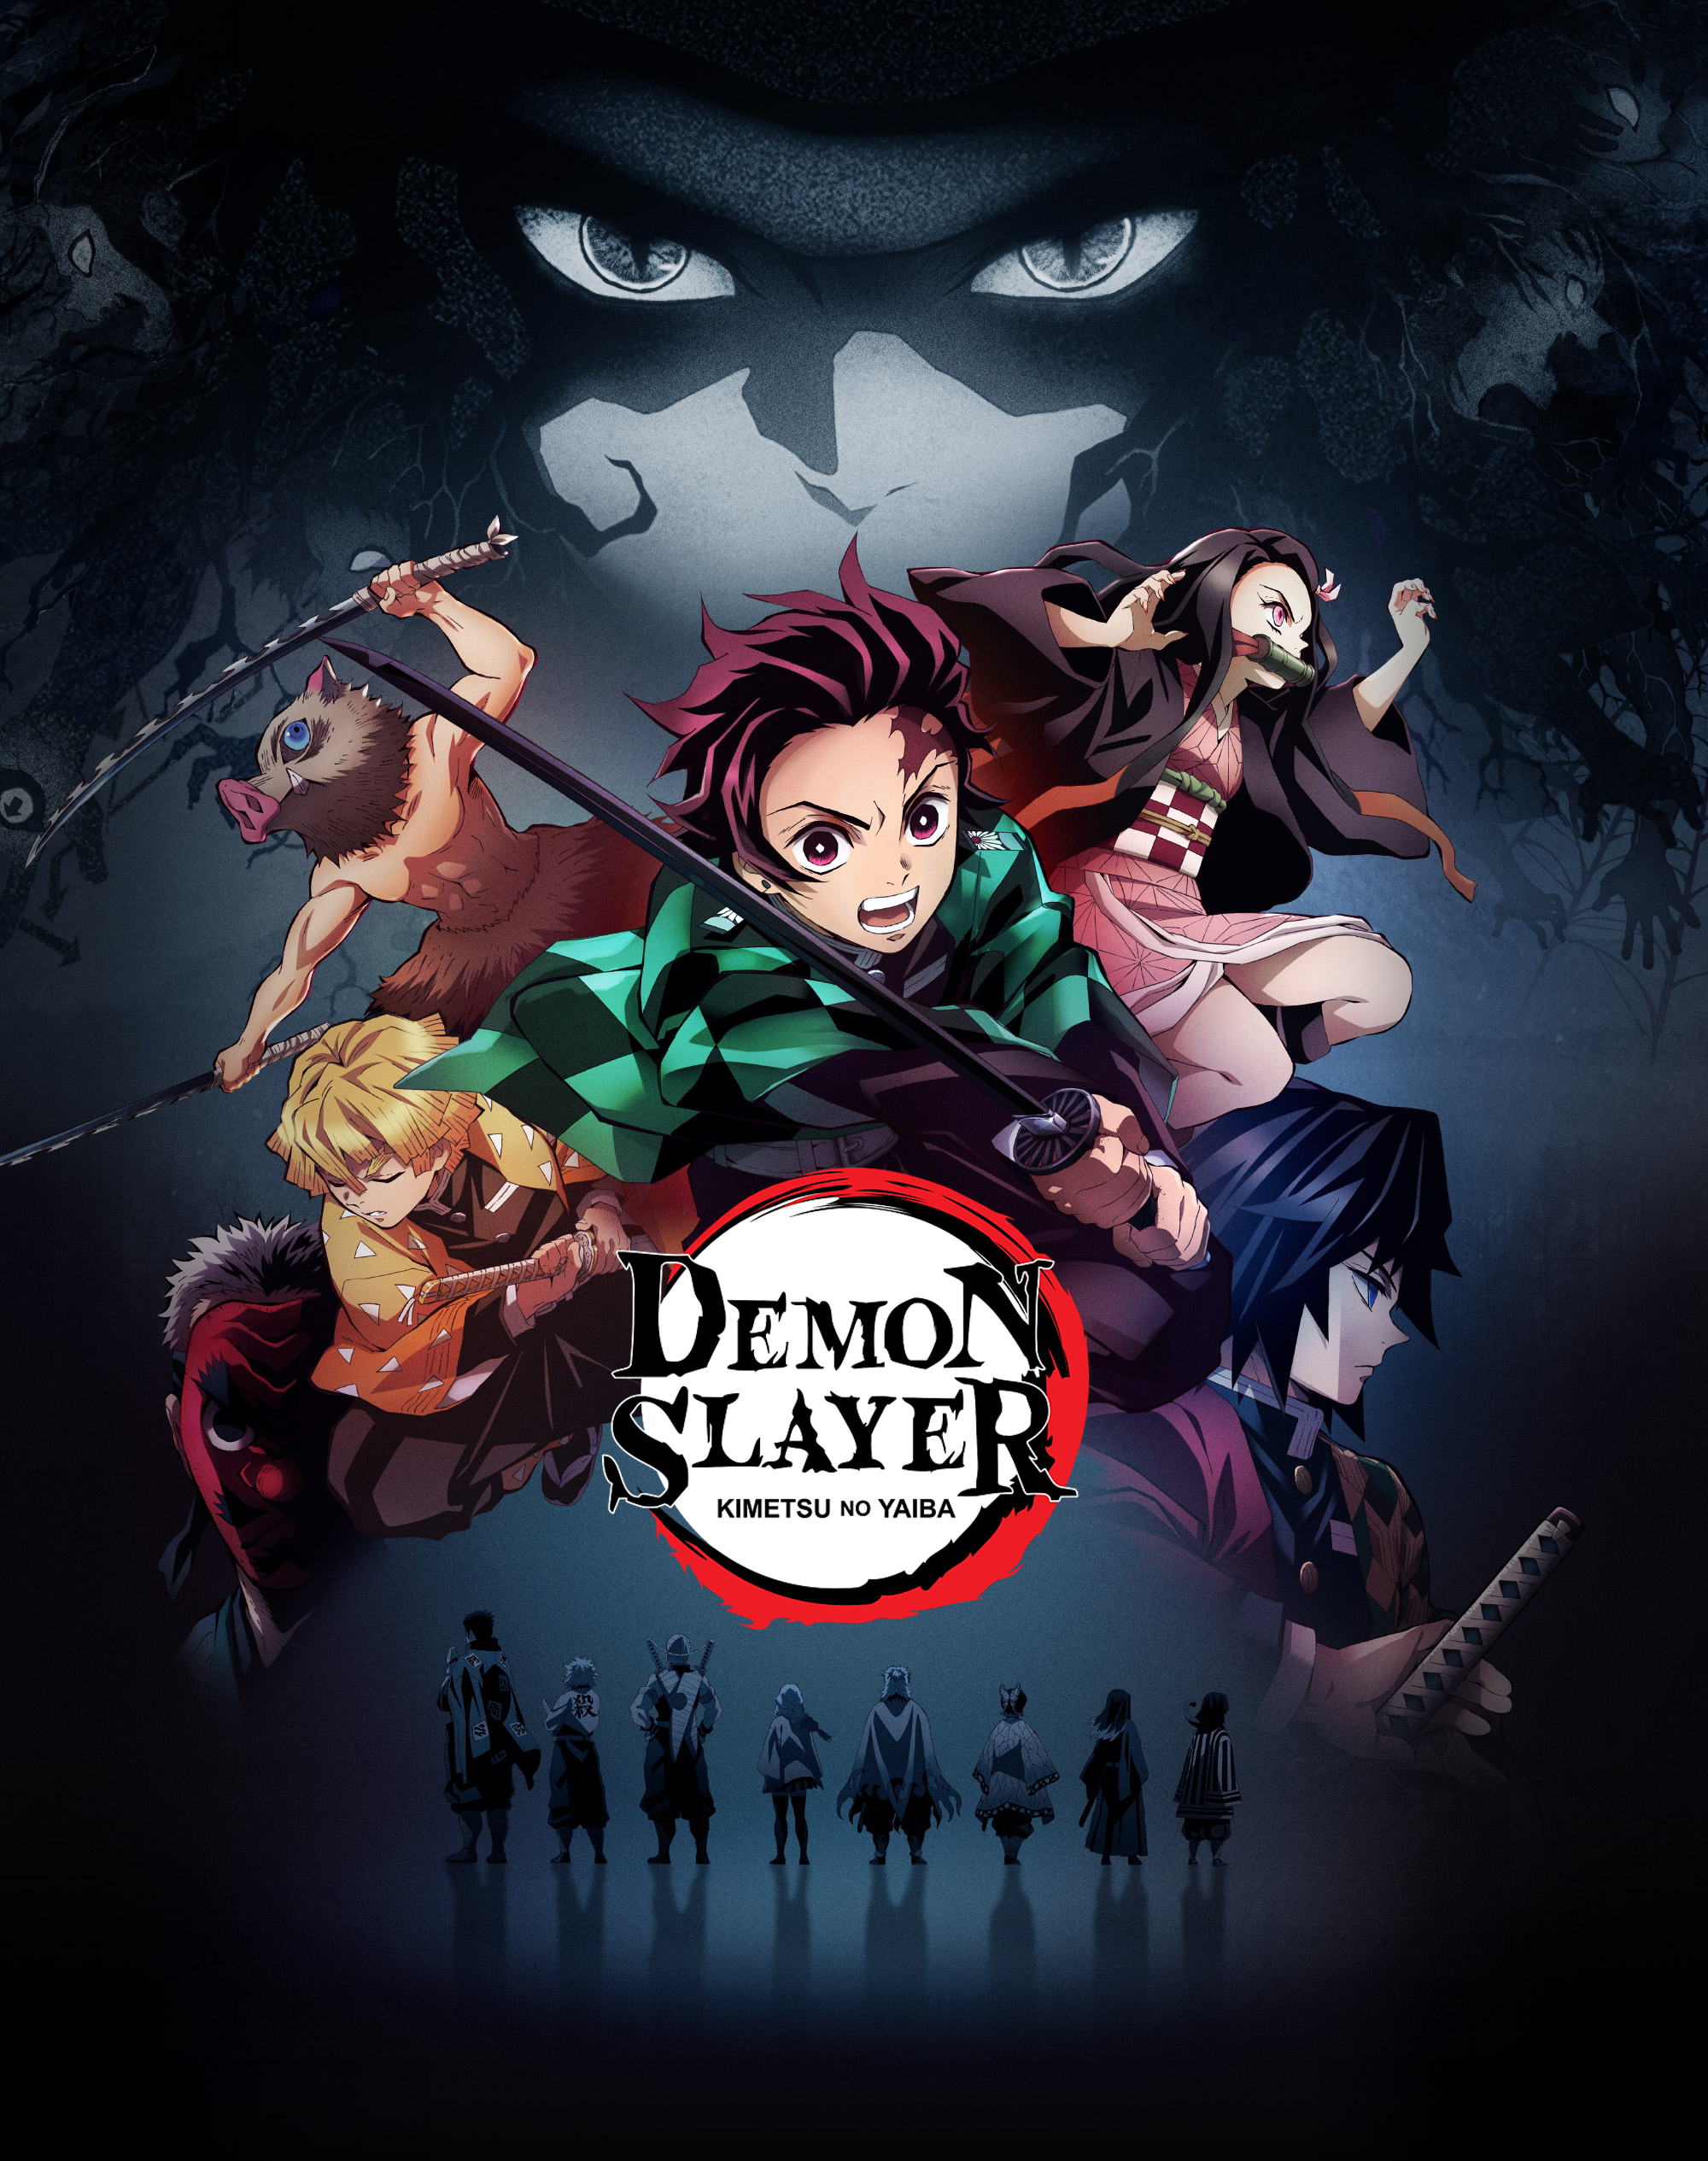 Saiu KIMETSU NO YAIBA DUBLADO NA NETFLIX - Anime Dublado demon slayer na netflix  data de lançamento 